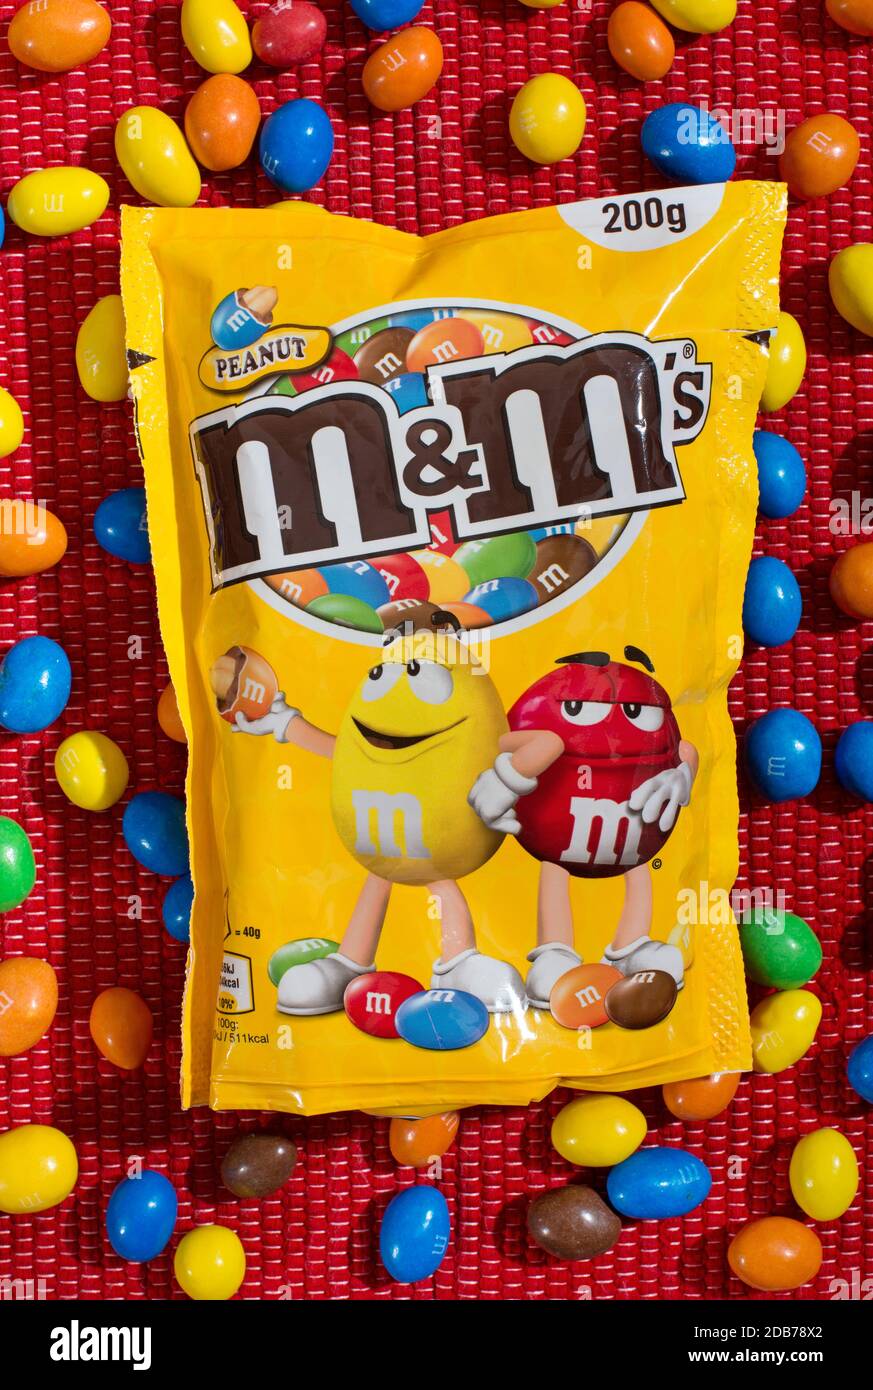 M&Ms, Bag of M&Ms, M&M, M&Ms candy Stock Photo - Alamy